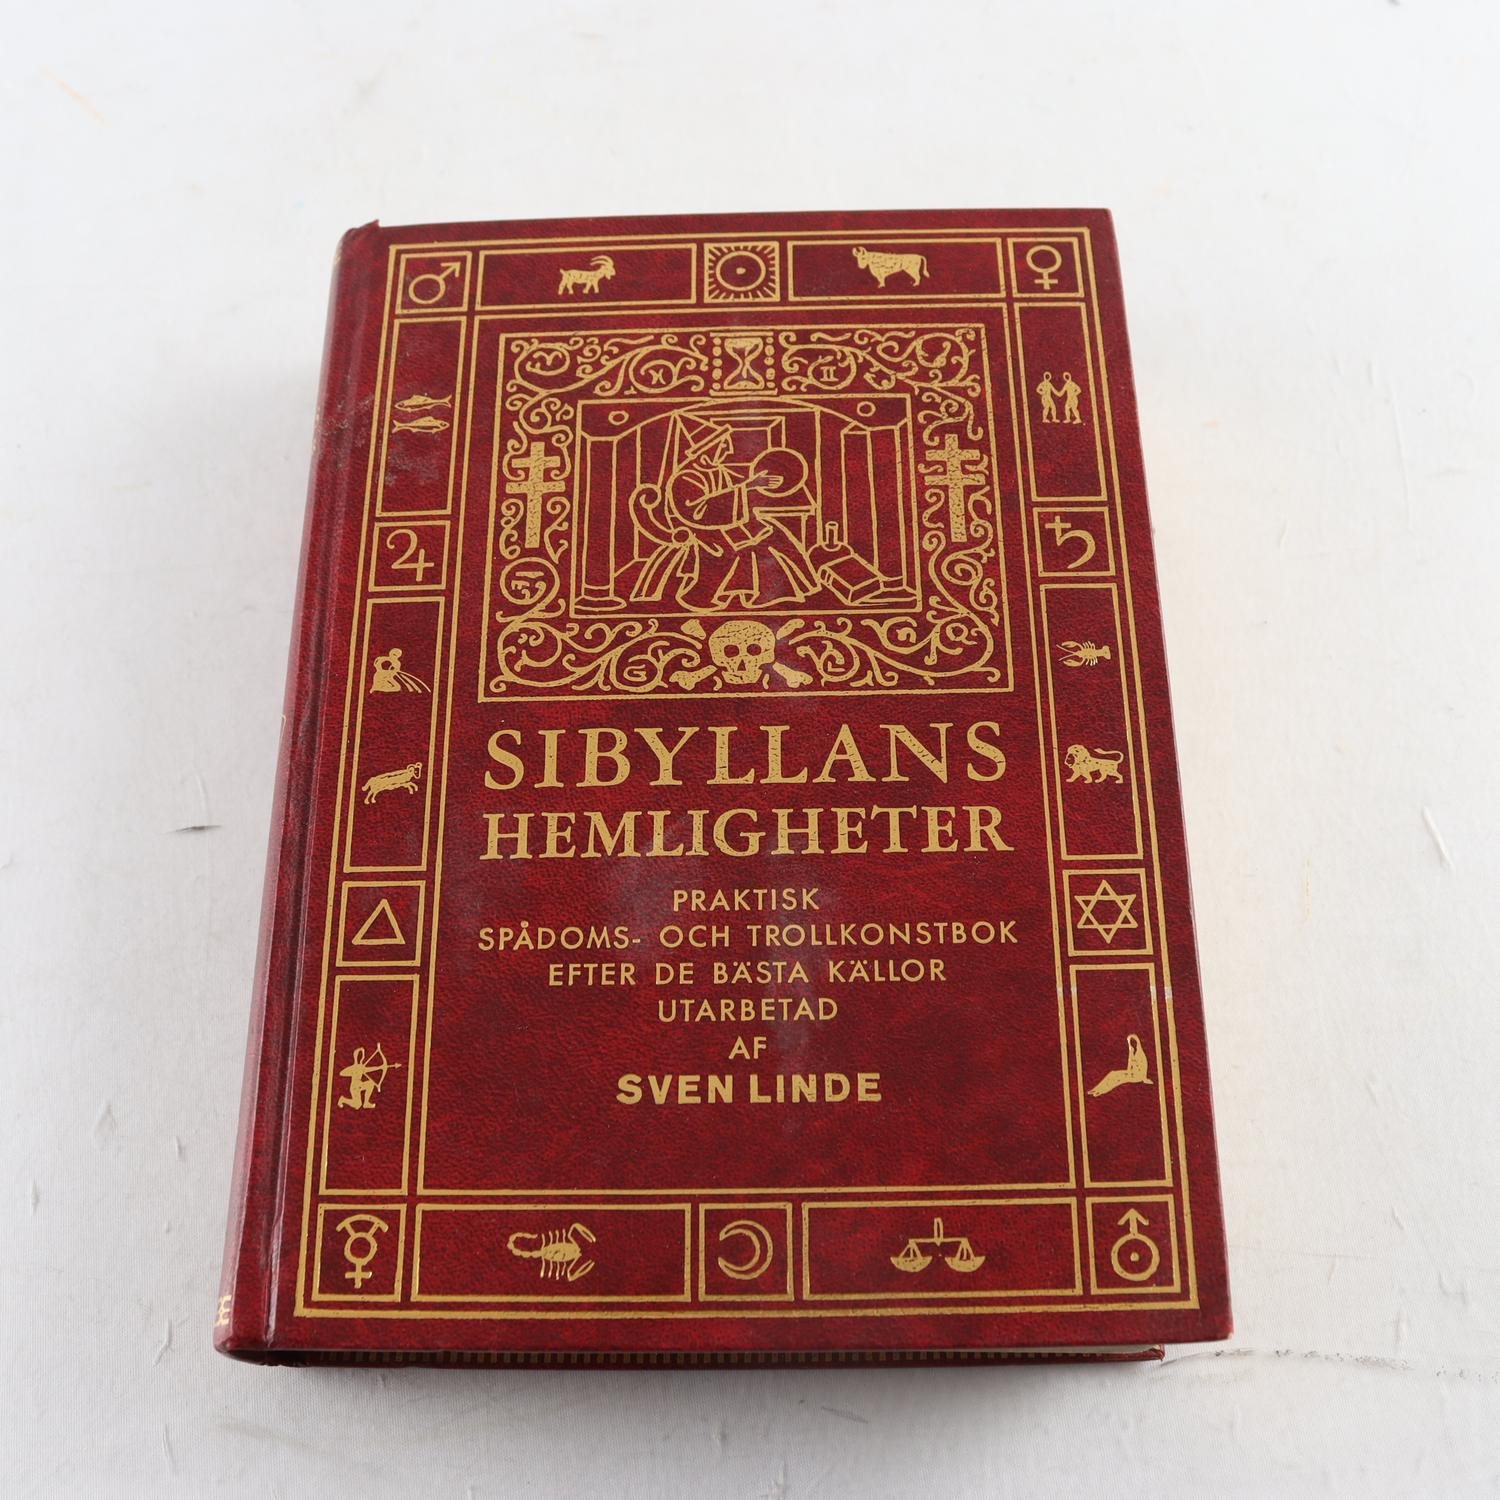 Sibyllans hemligheter: Praktisk spådoms- och trollkonstbok